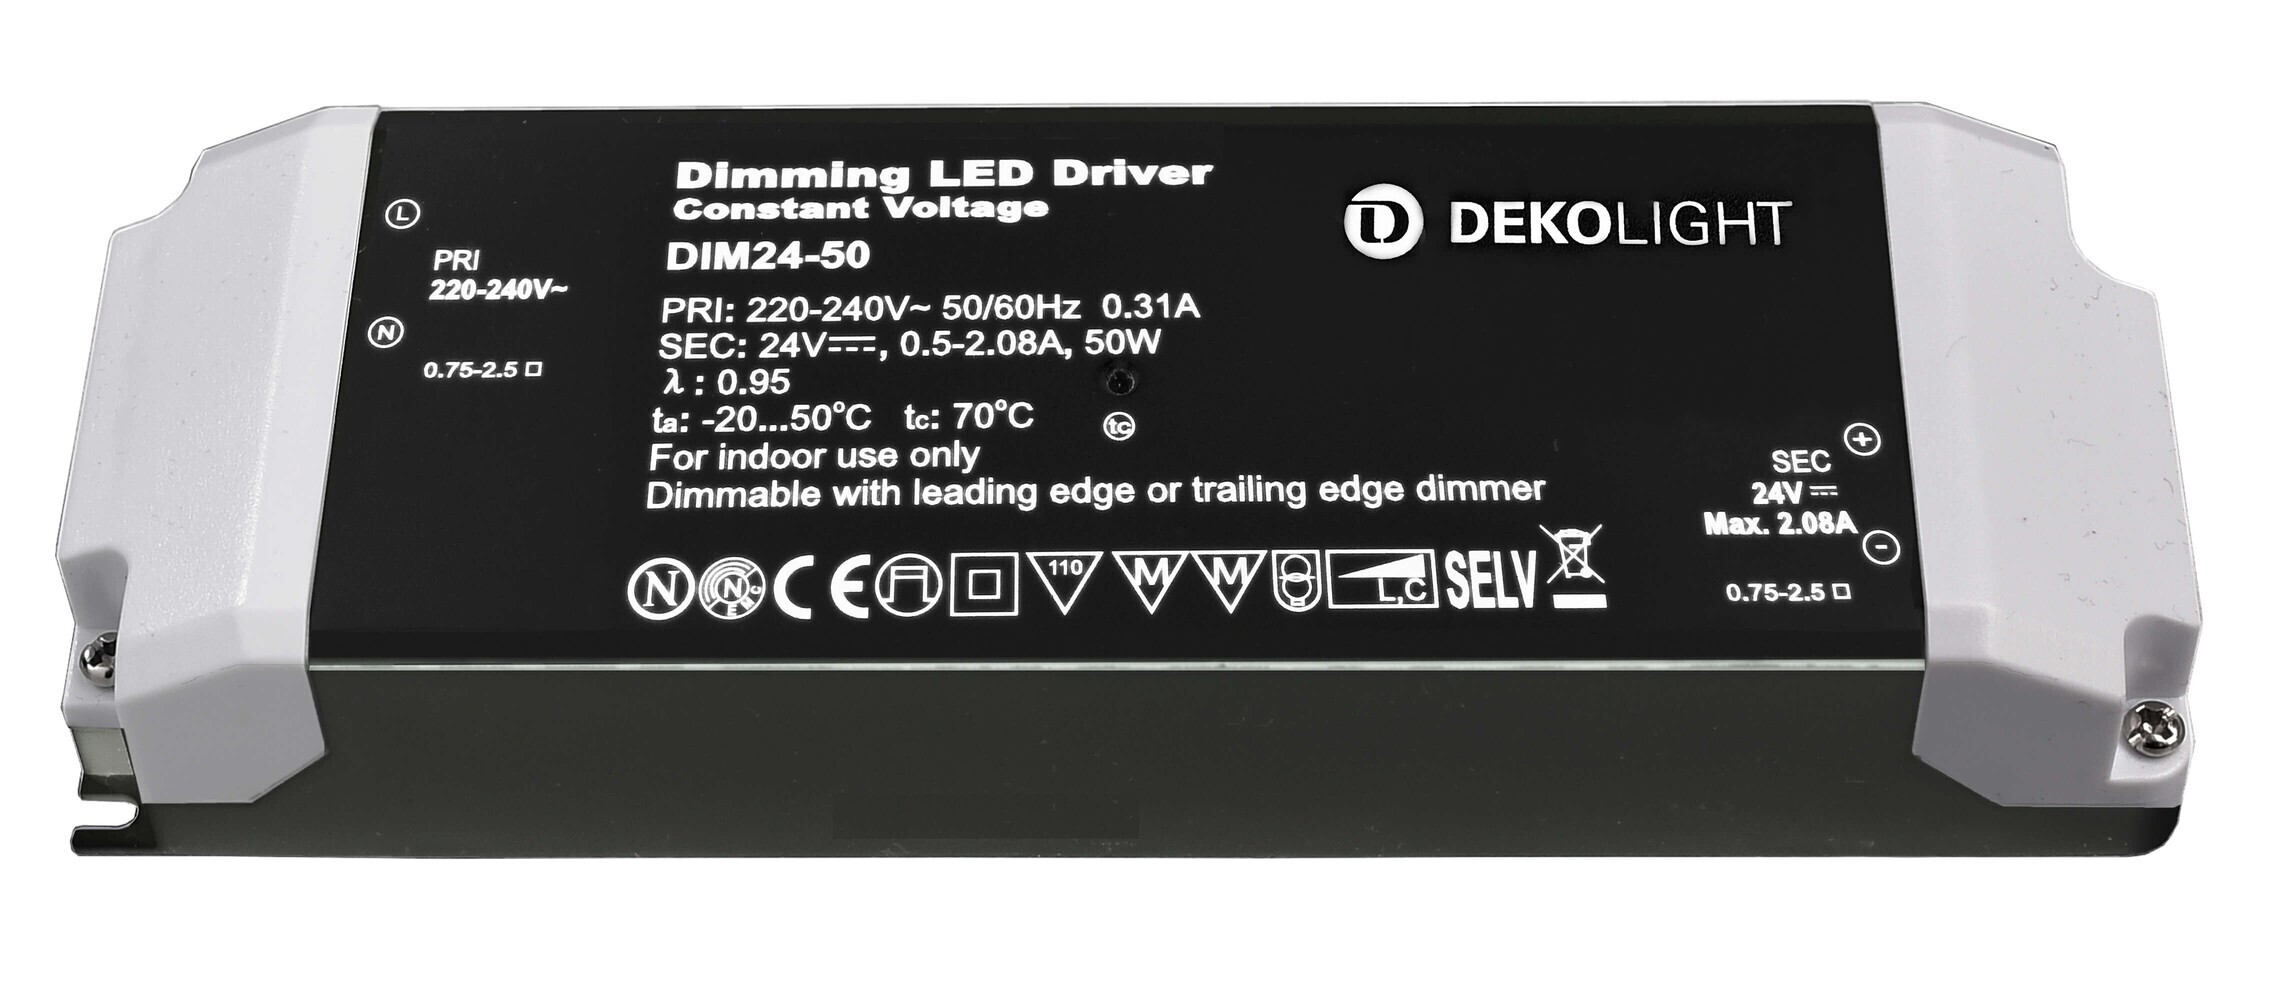 Eindrucksvolles, leistungsstarkes LED Netzteil der Marke Deko-Light